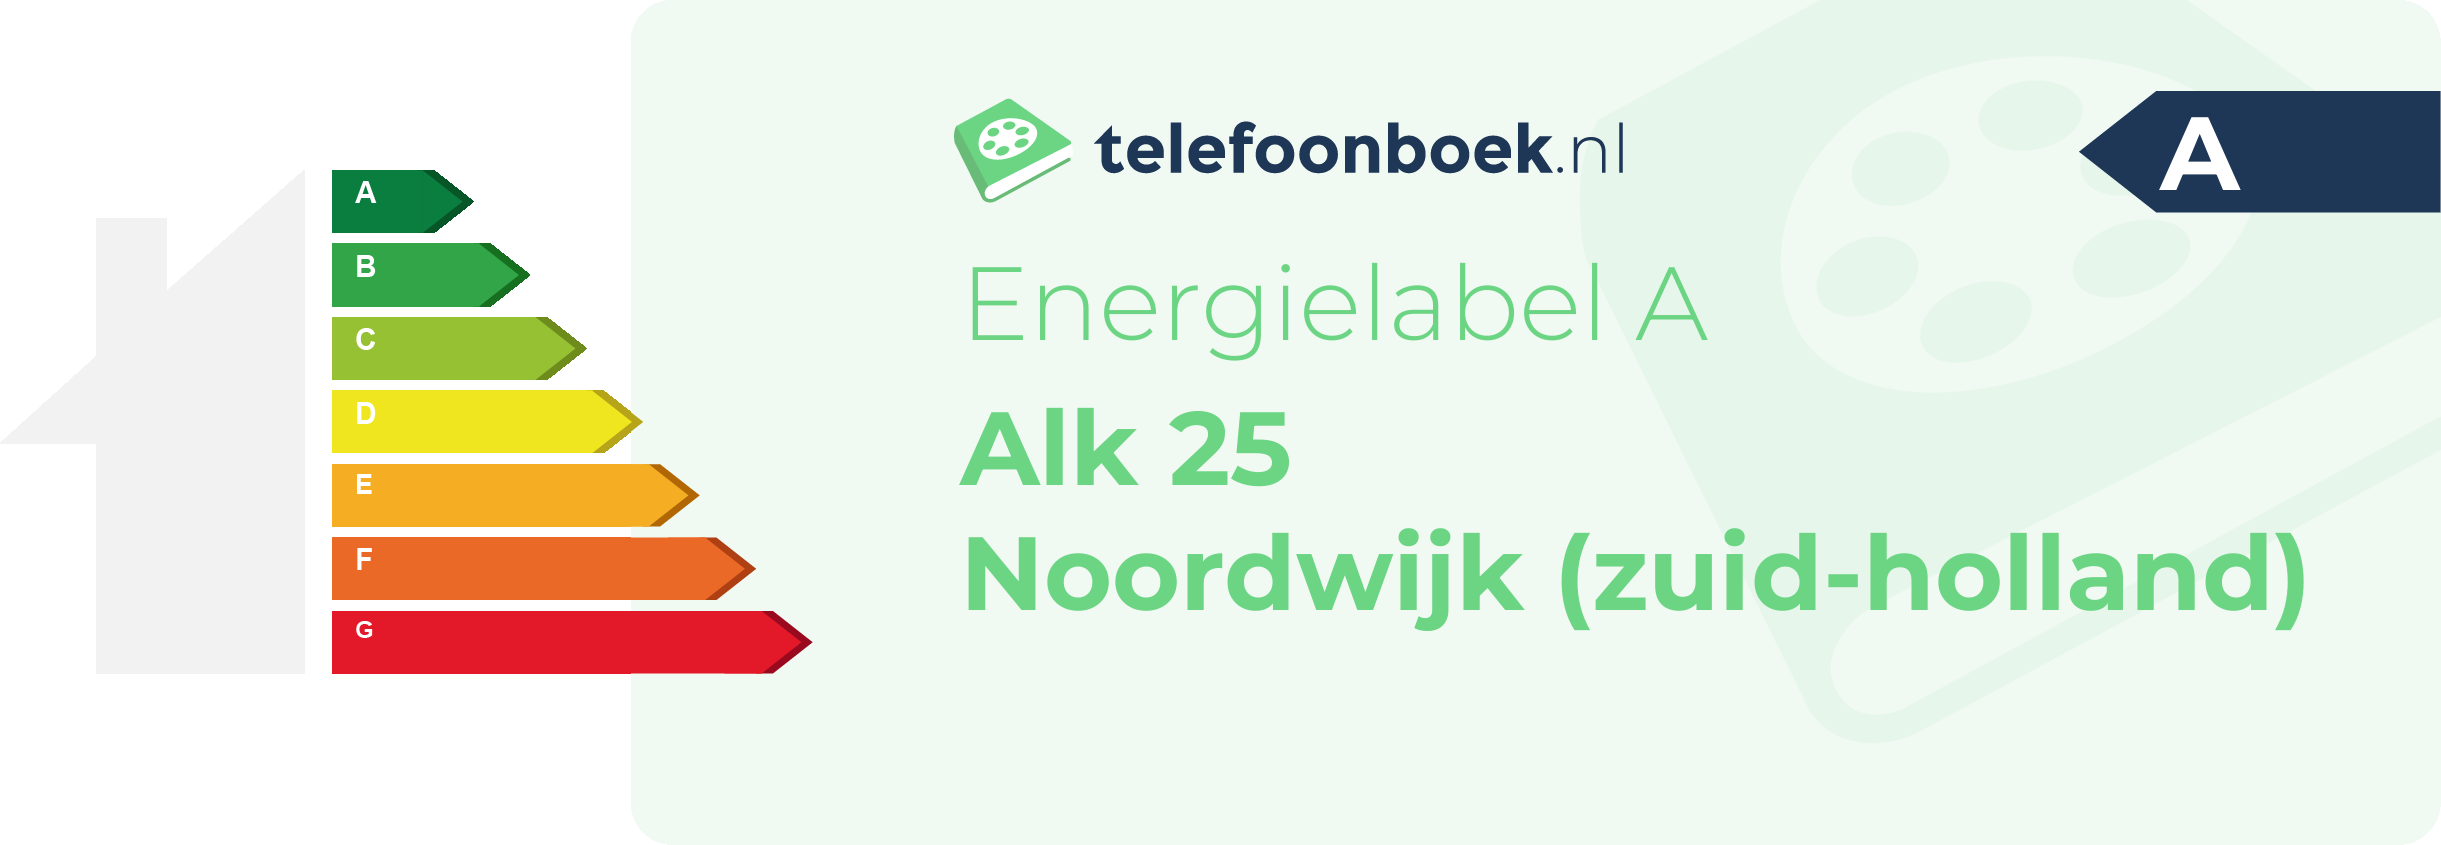 Energielabel Alk 25 Noordwijk (Zuid-Holland)